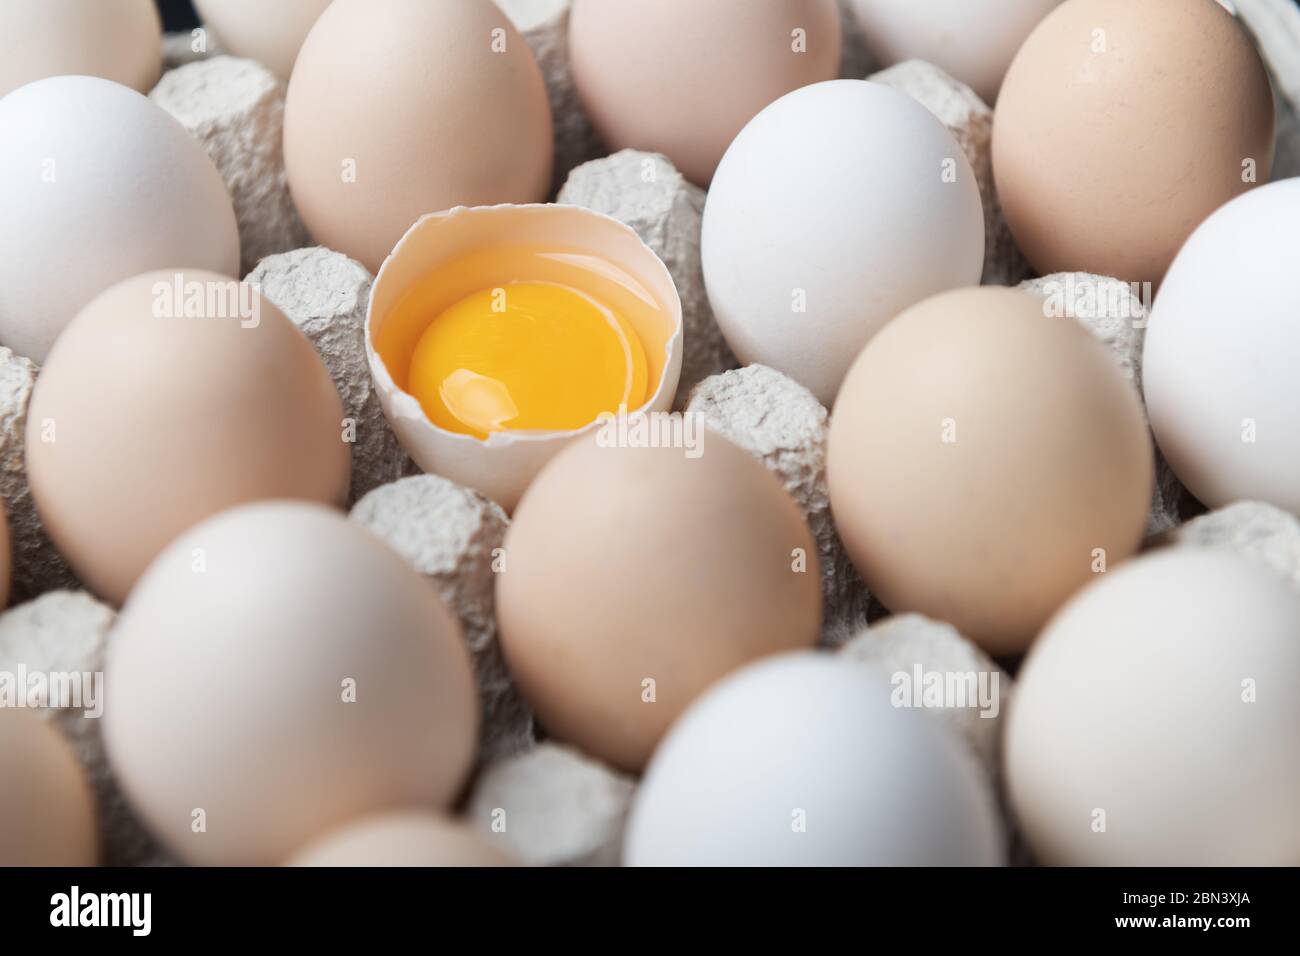 Hühnereier in Bio-Verpackung Nahaufnahme. Ei halb gebrochen unter anderen Eiern. Food-Fotografie Stockfoto